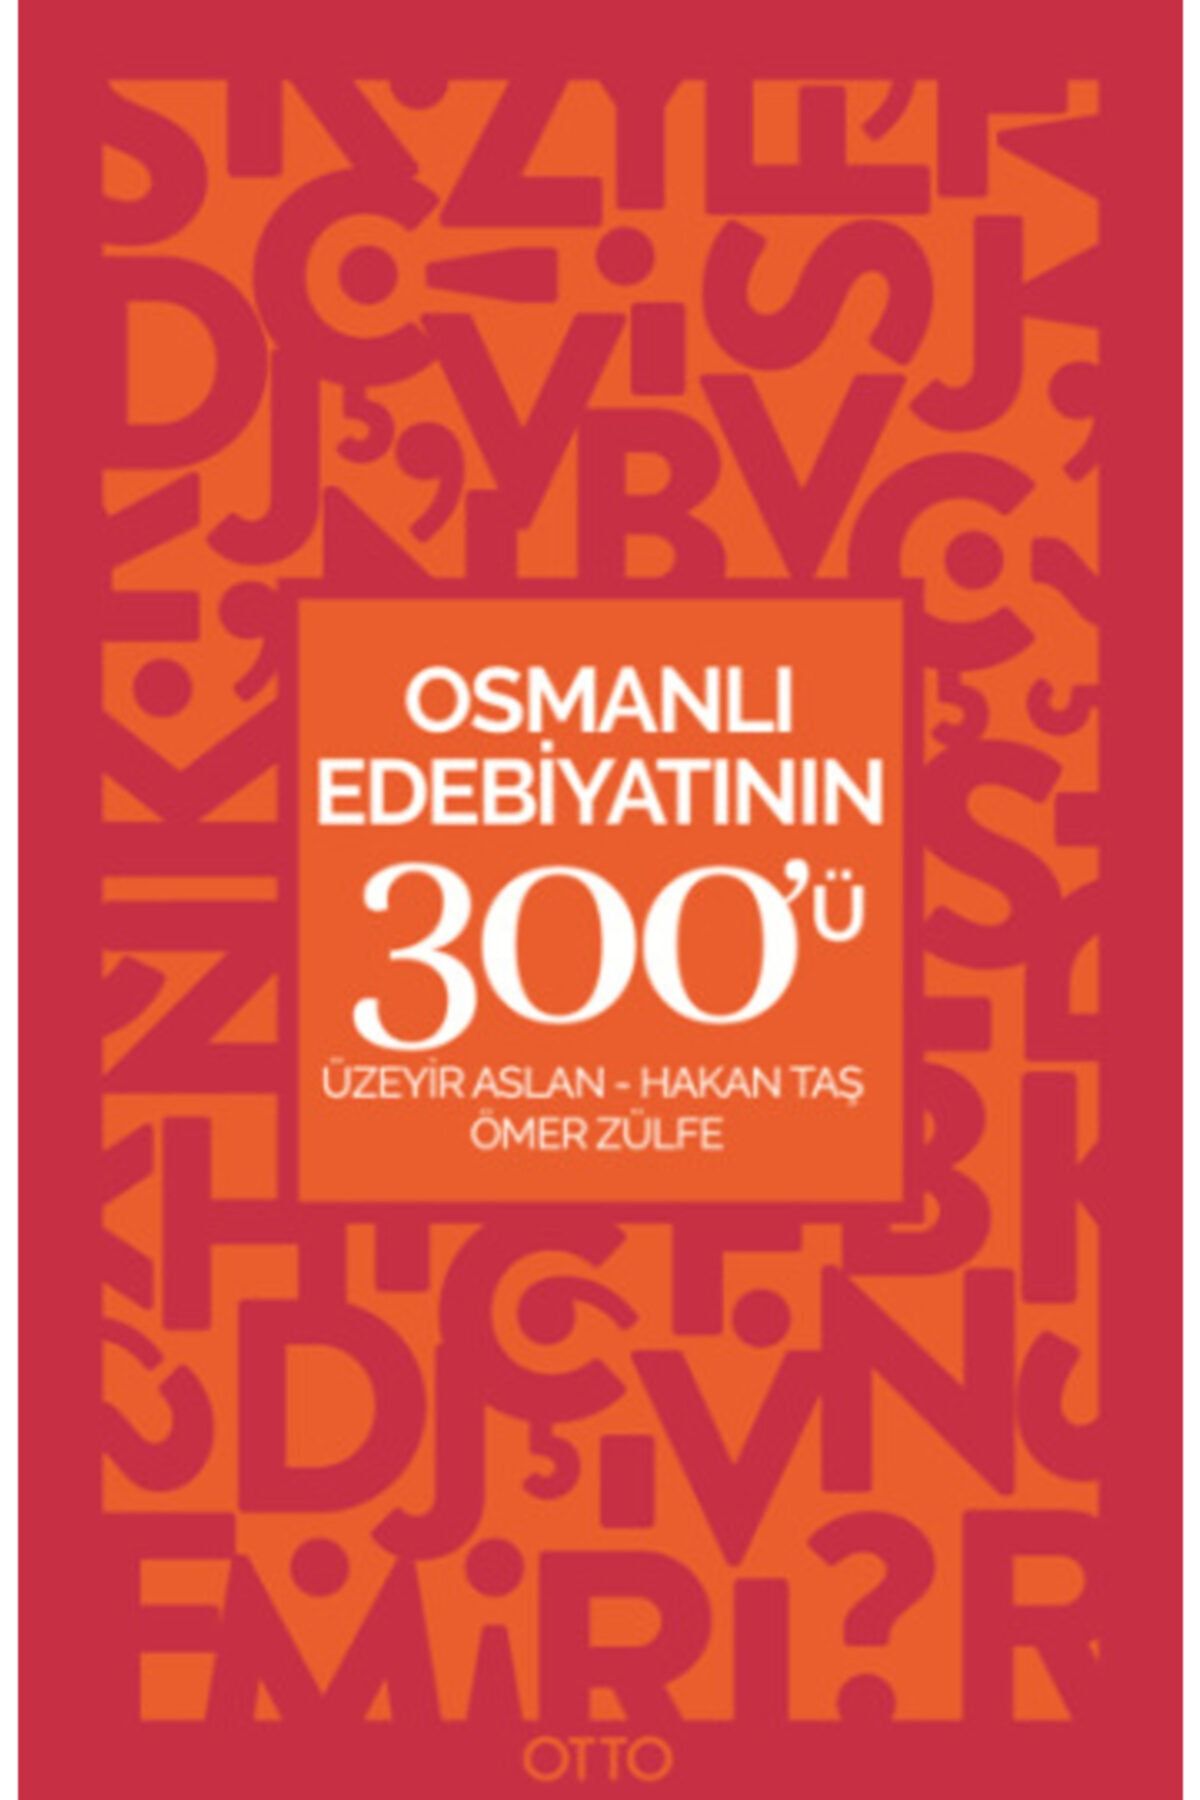 Otto Osmanlı Edebiyatının 300'ü - Hakan Taş,Ömer Zülfe,Üzeyir Aslan